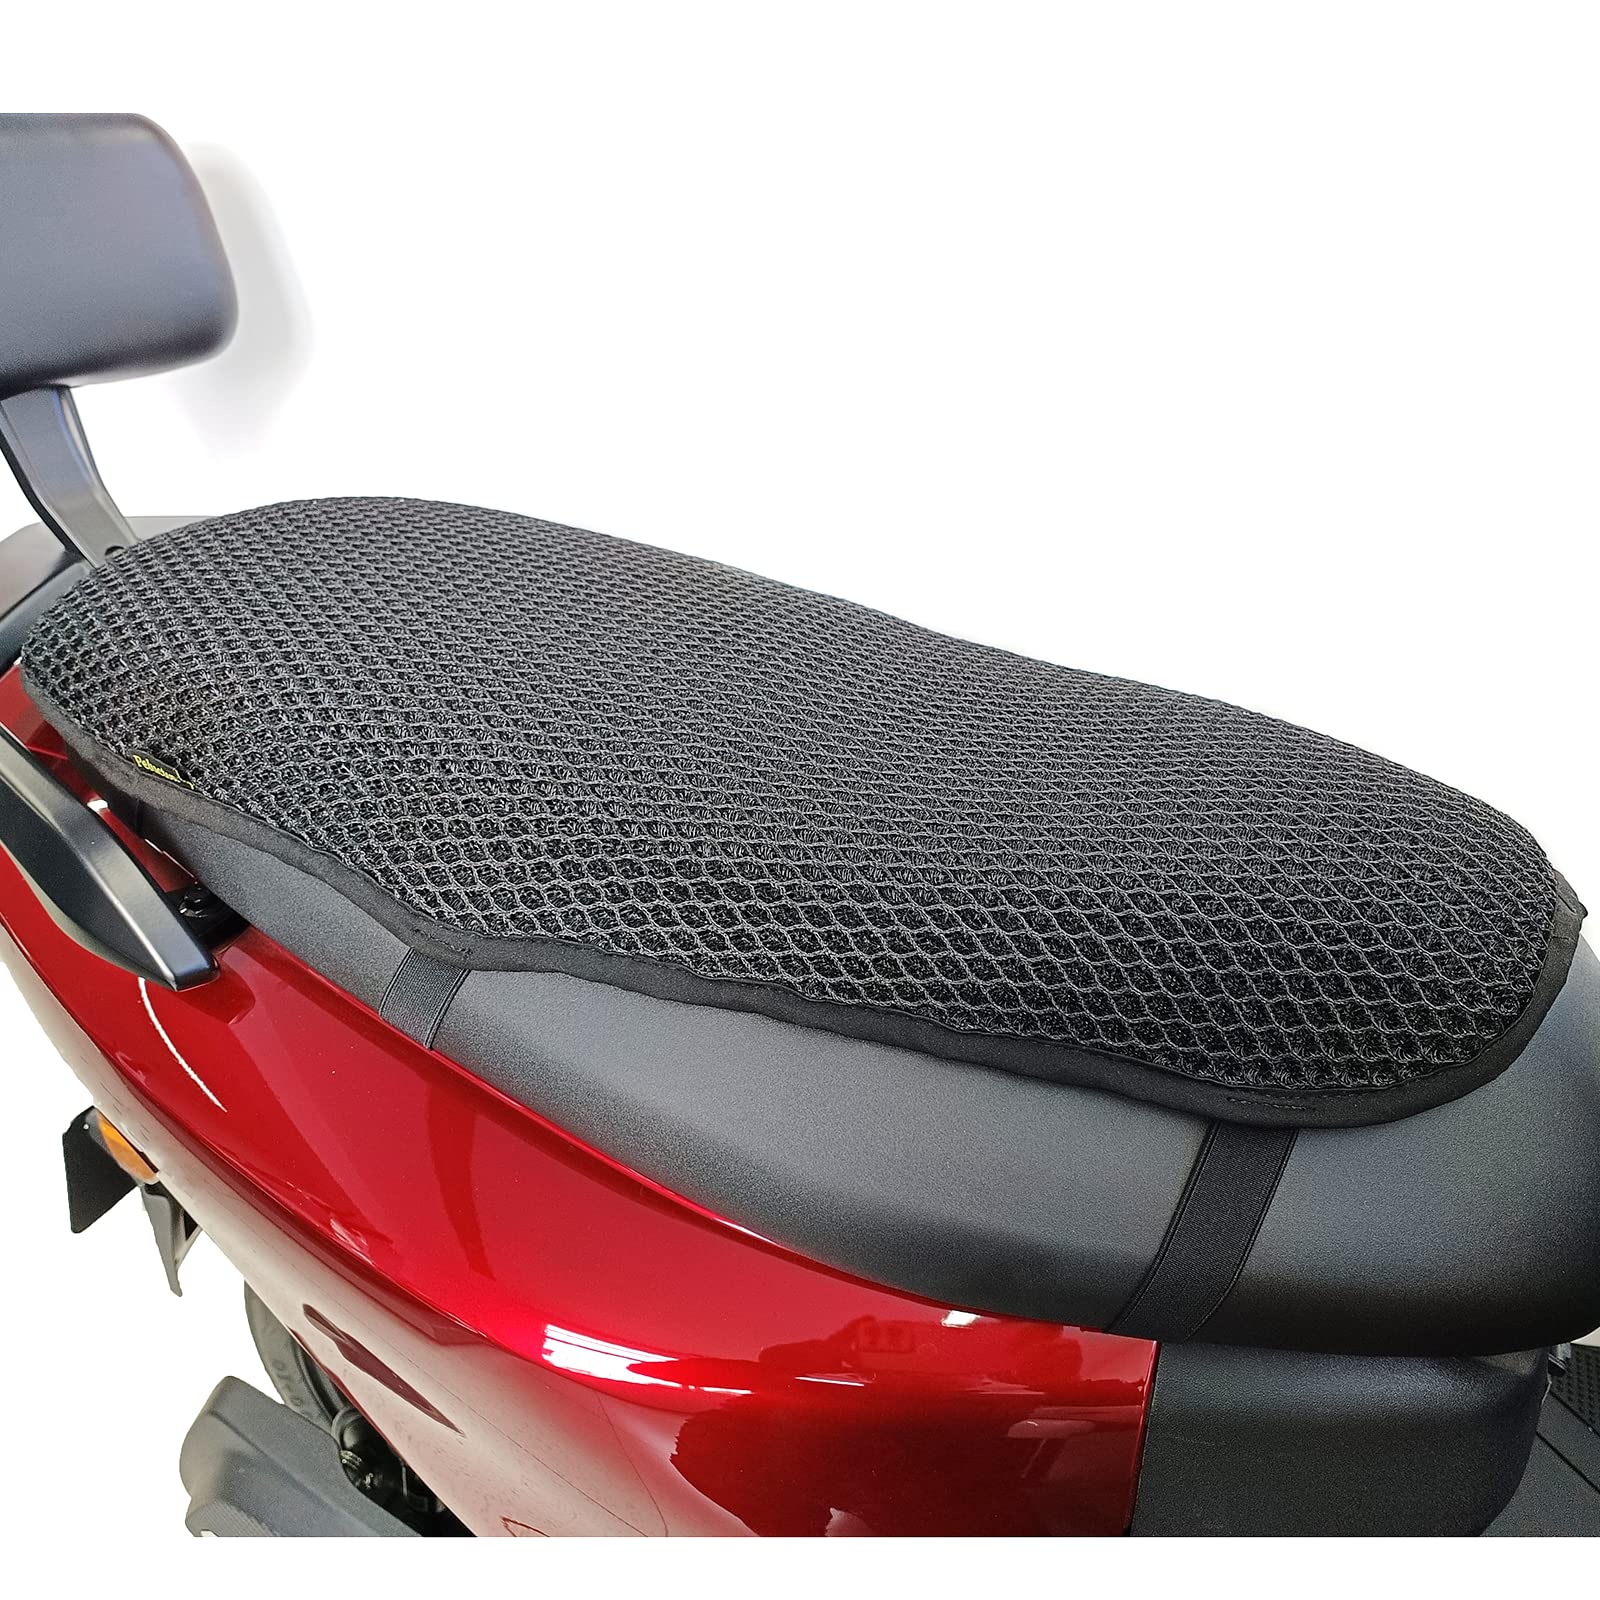 Pelucton Motorrad Roller kühlende Sitzbezug für Sonne, Btmungsaktives Mesh Motorroller Sitzkissen, Universal Antirutsch Moped Sattelschoner. von Pelucton